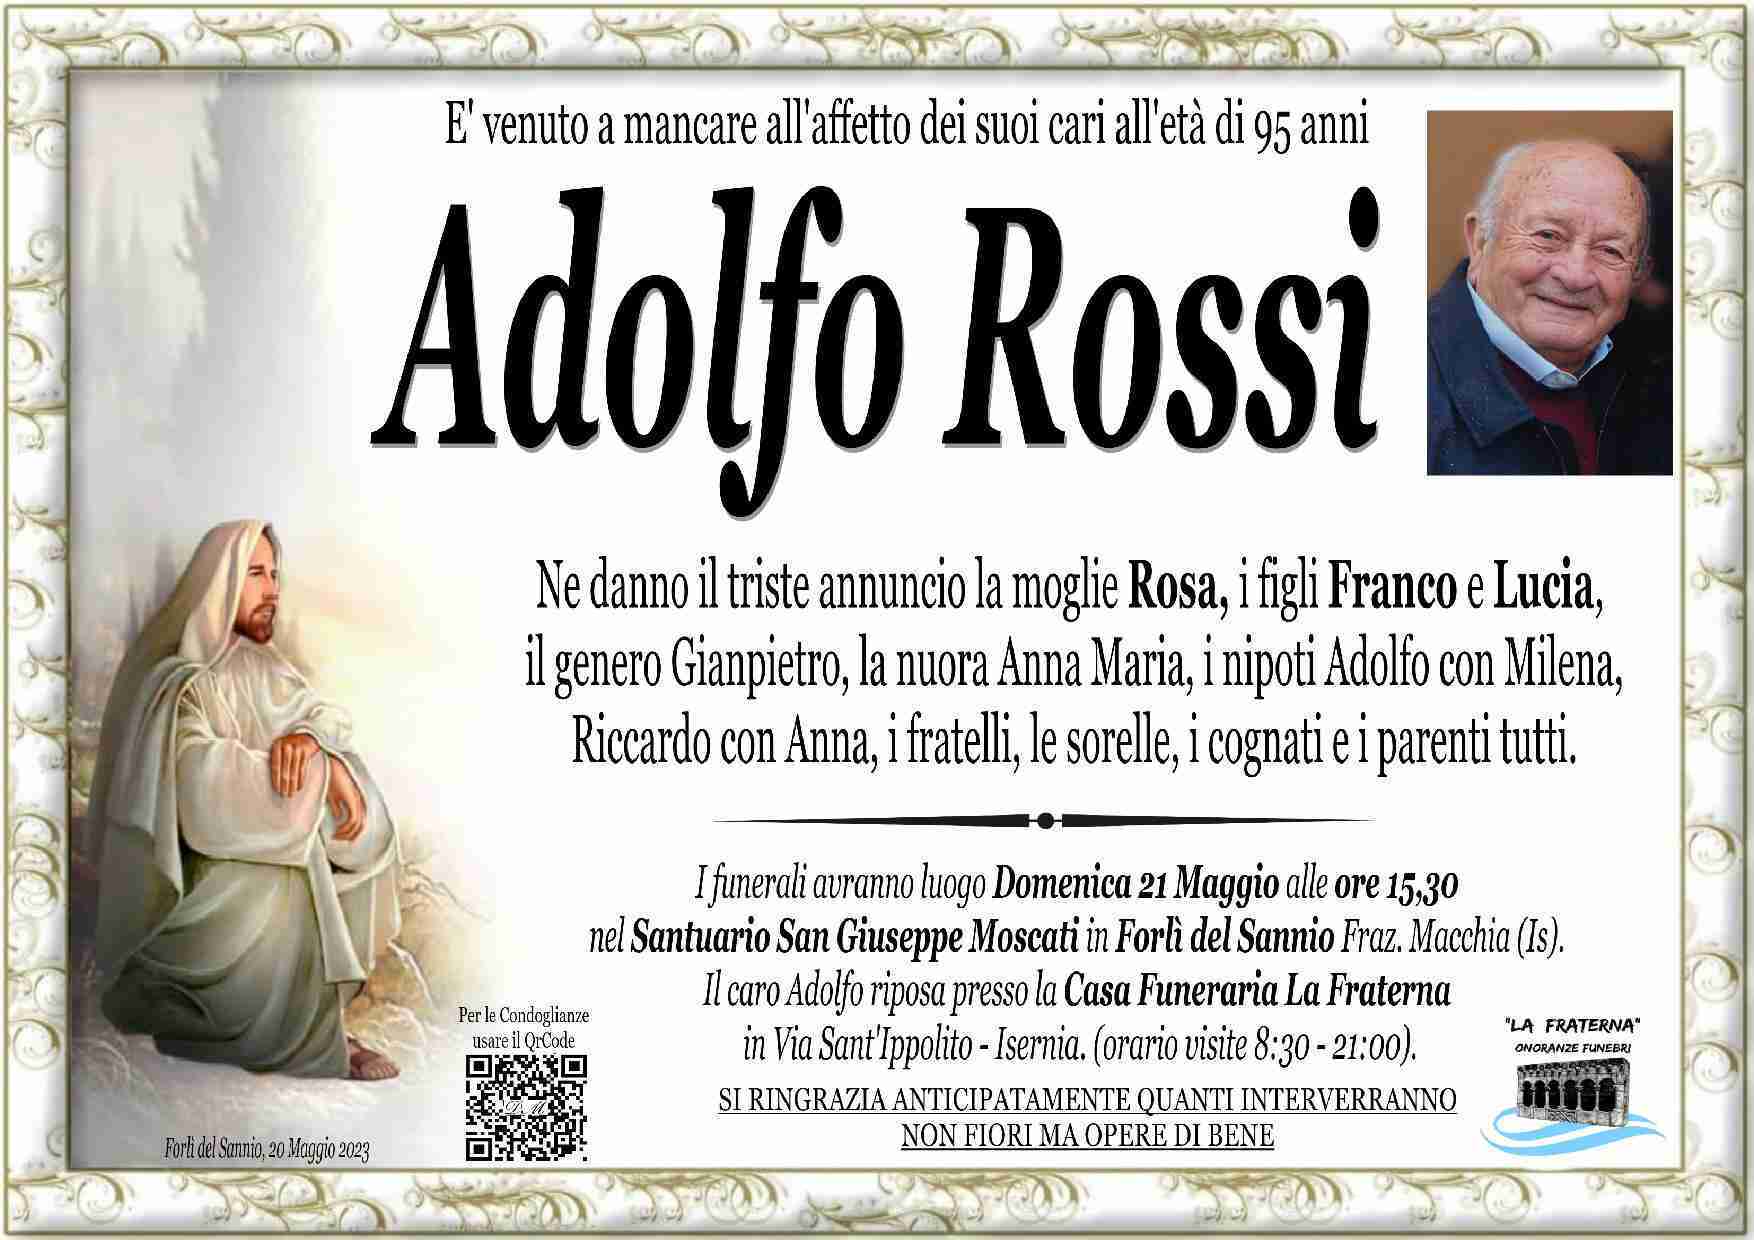 Adolfo Rossi